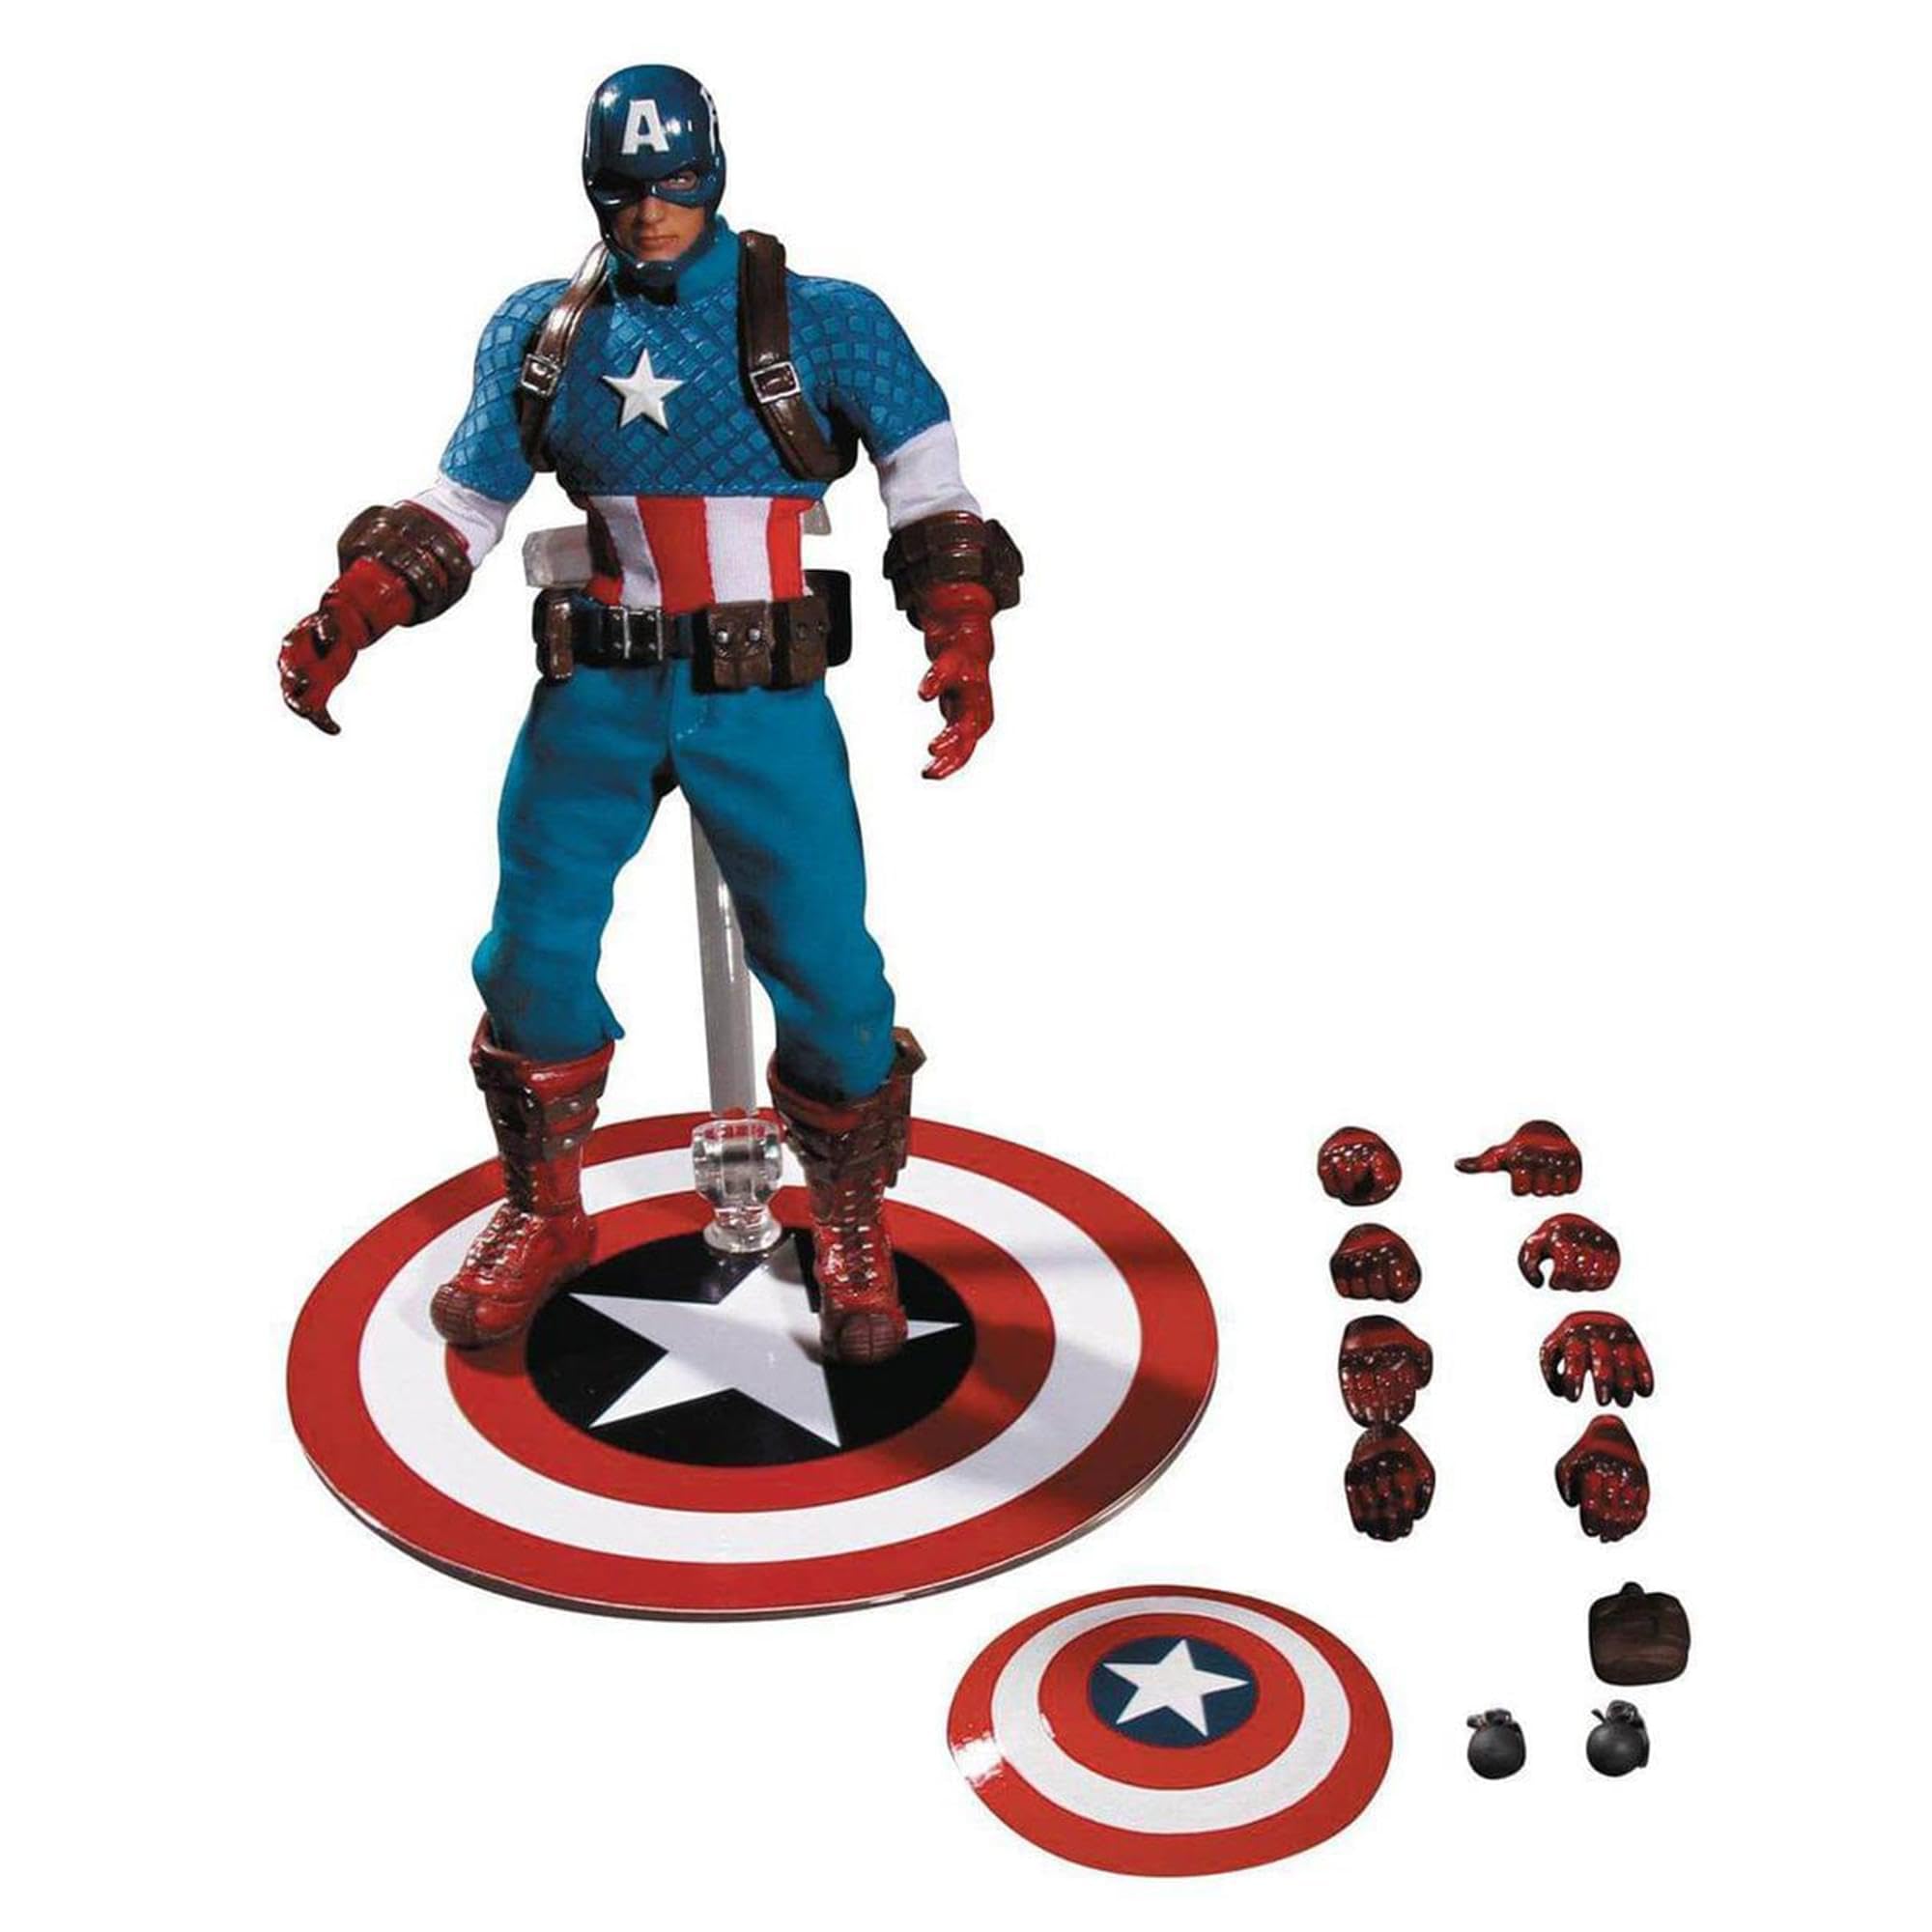 Mezco Toyz ONE:12 Collective: Captain America Action Figure